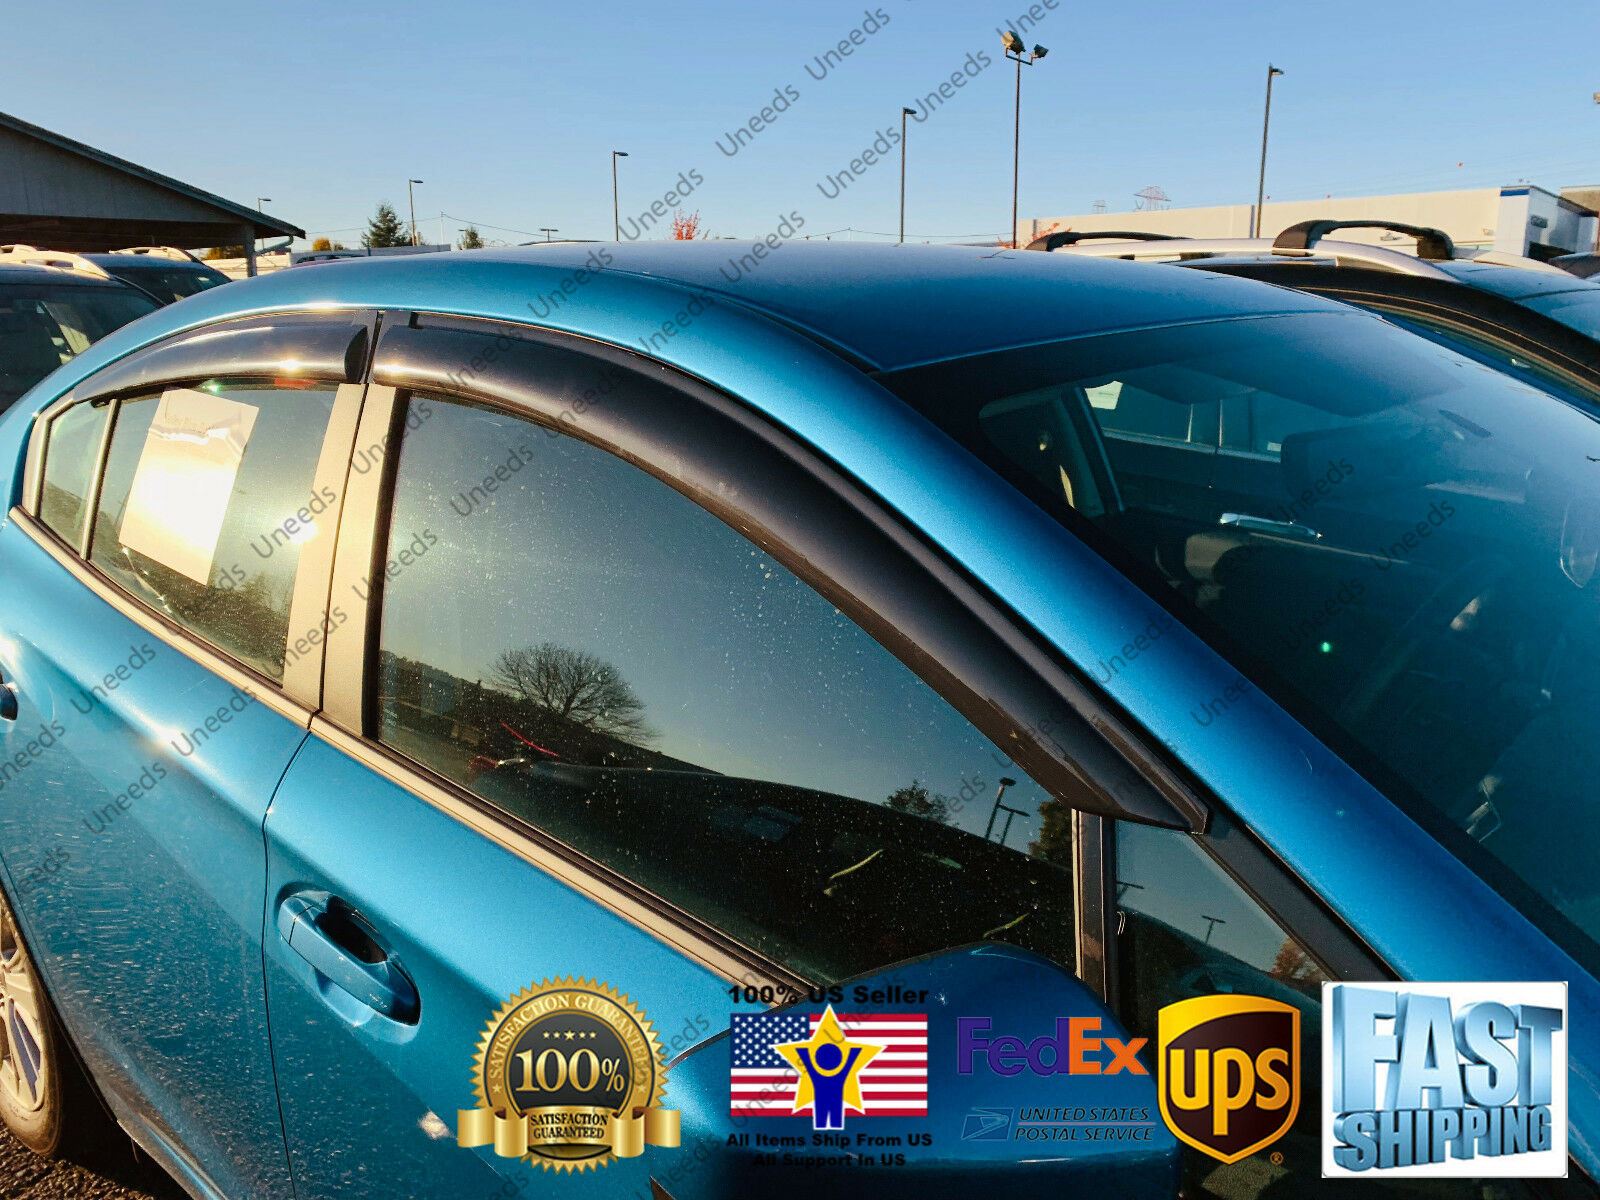 Ajuste 2018-21 Subaru Impreza Sedan OE Style Vent Window Viseras Rain Sun Wind Guards Shade Deflectors